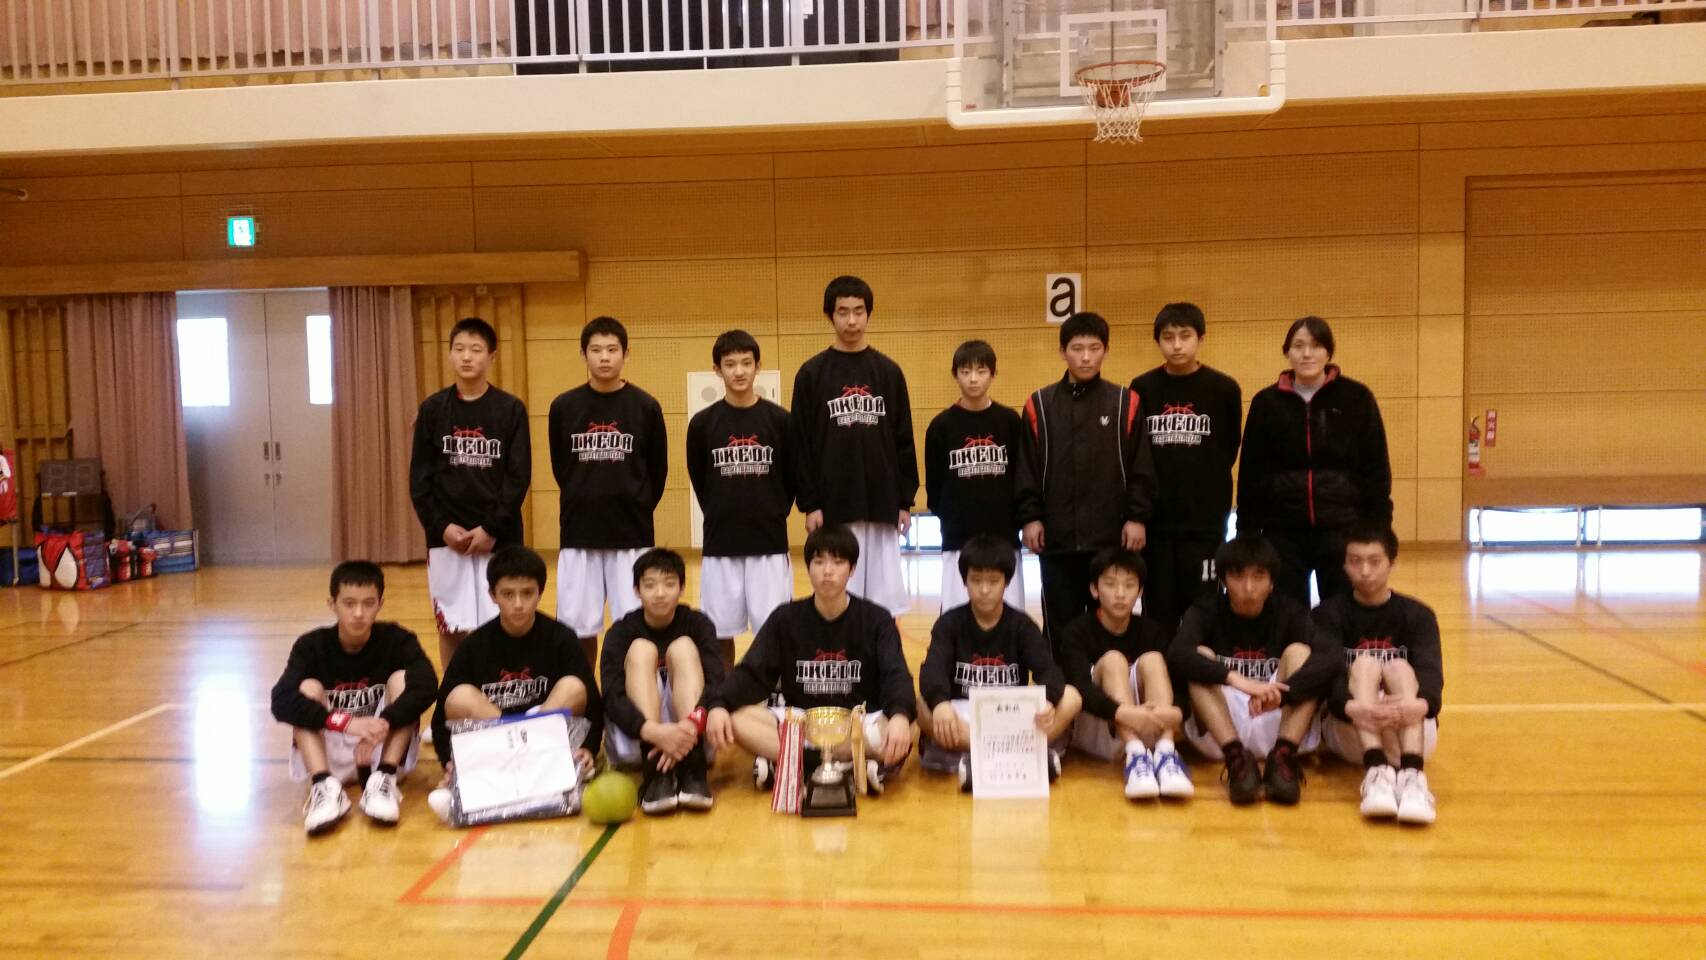 中学バスケットボール部 市大会優勝 県代表選手選出 学校法人 池田学園